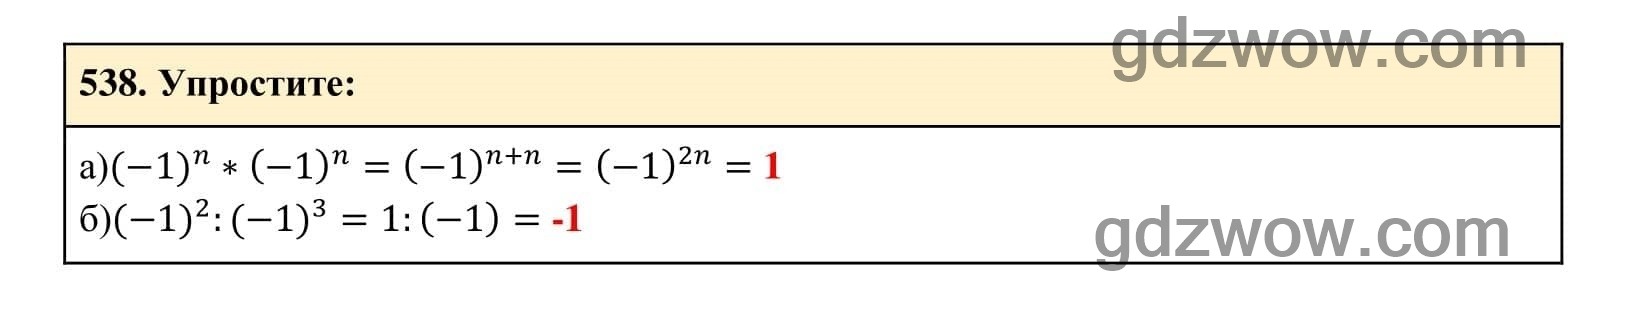 Упражнение 538 - ГДЗ по Алгебре 7 класс Учебник Макарычев (решебник) - GDZwow